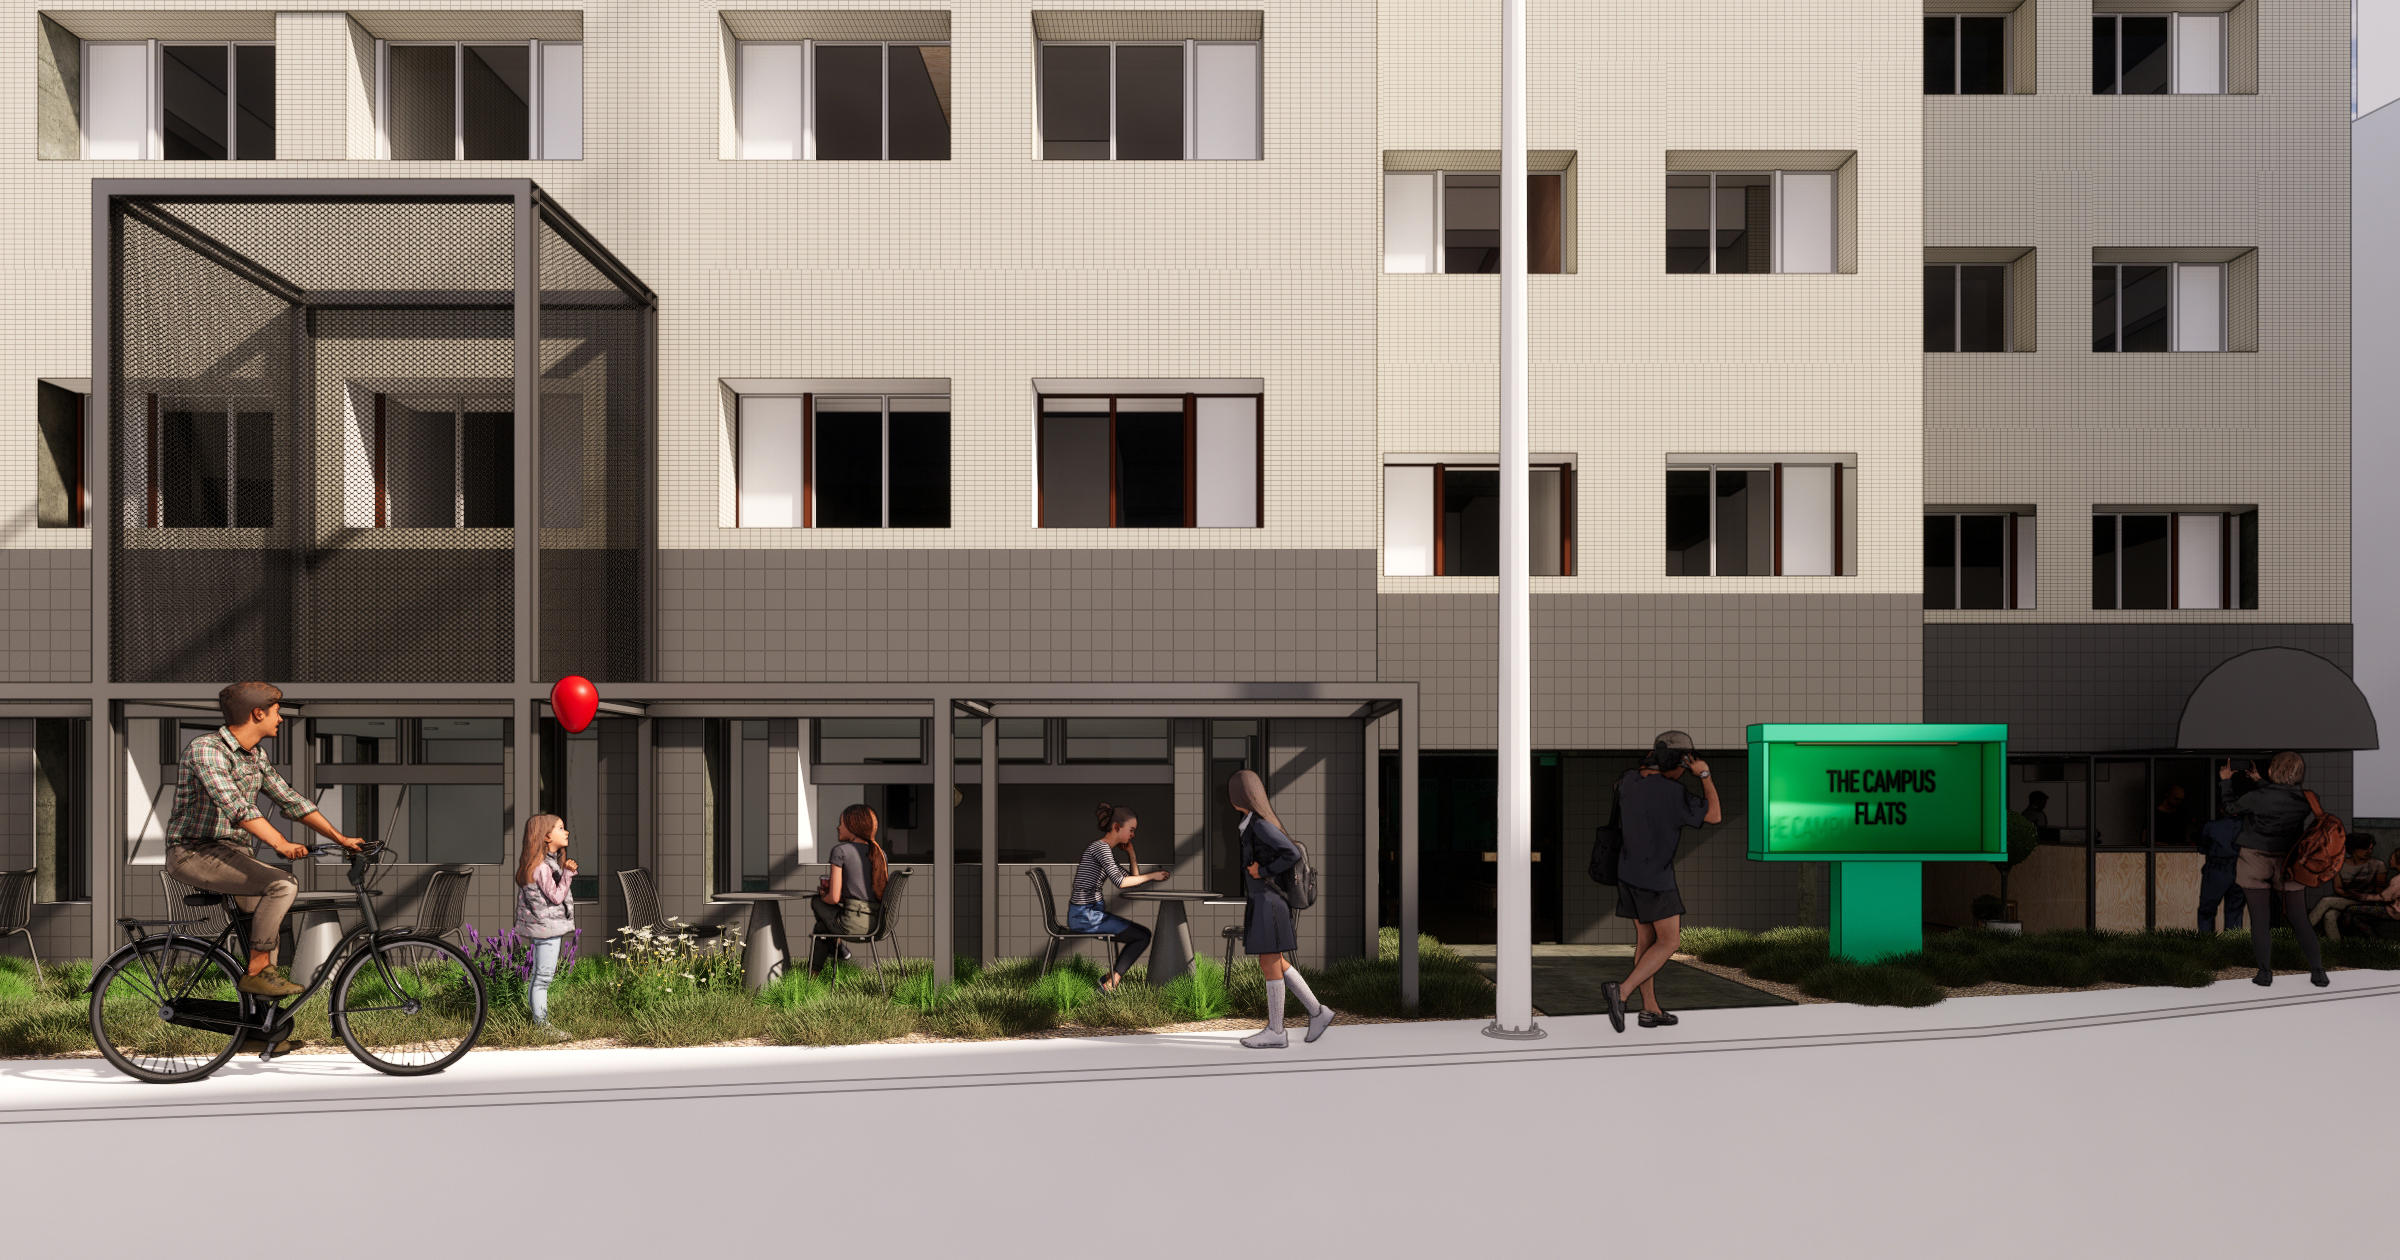 暮らしの中に、実験を。コクヨが新たな集合住宅を提案「THE CAMPUS FLATS Togoshi」7月オープン決定